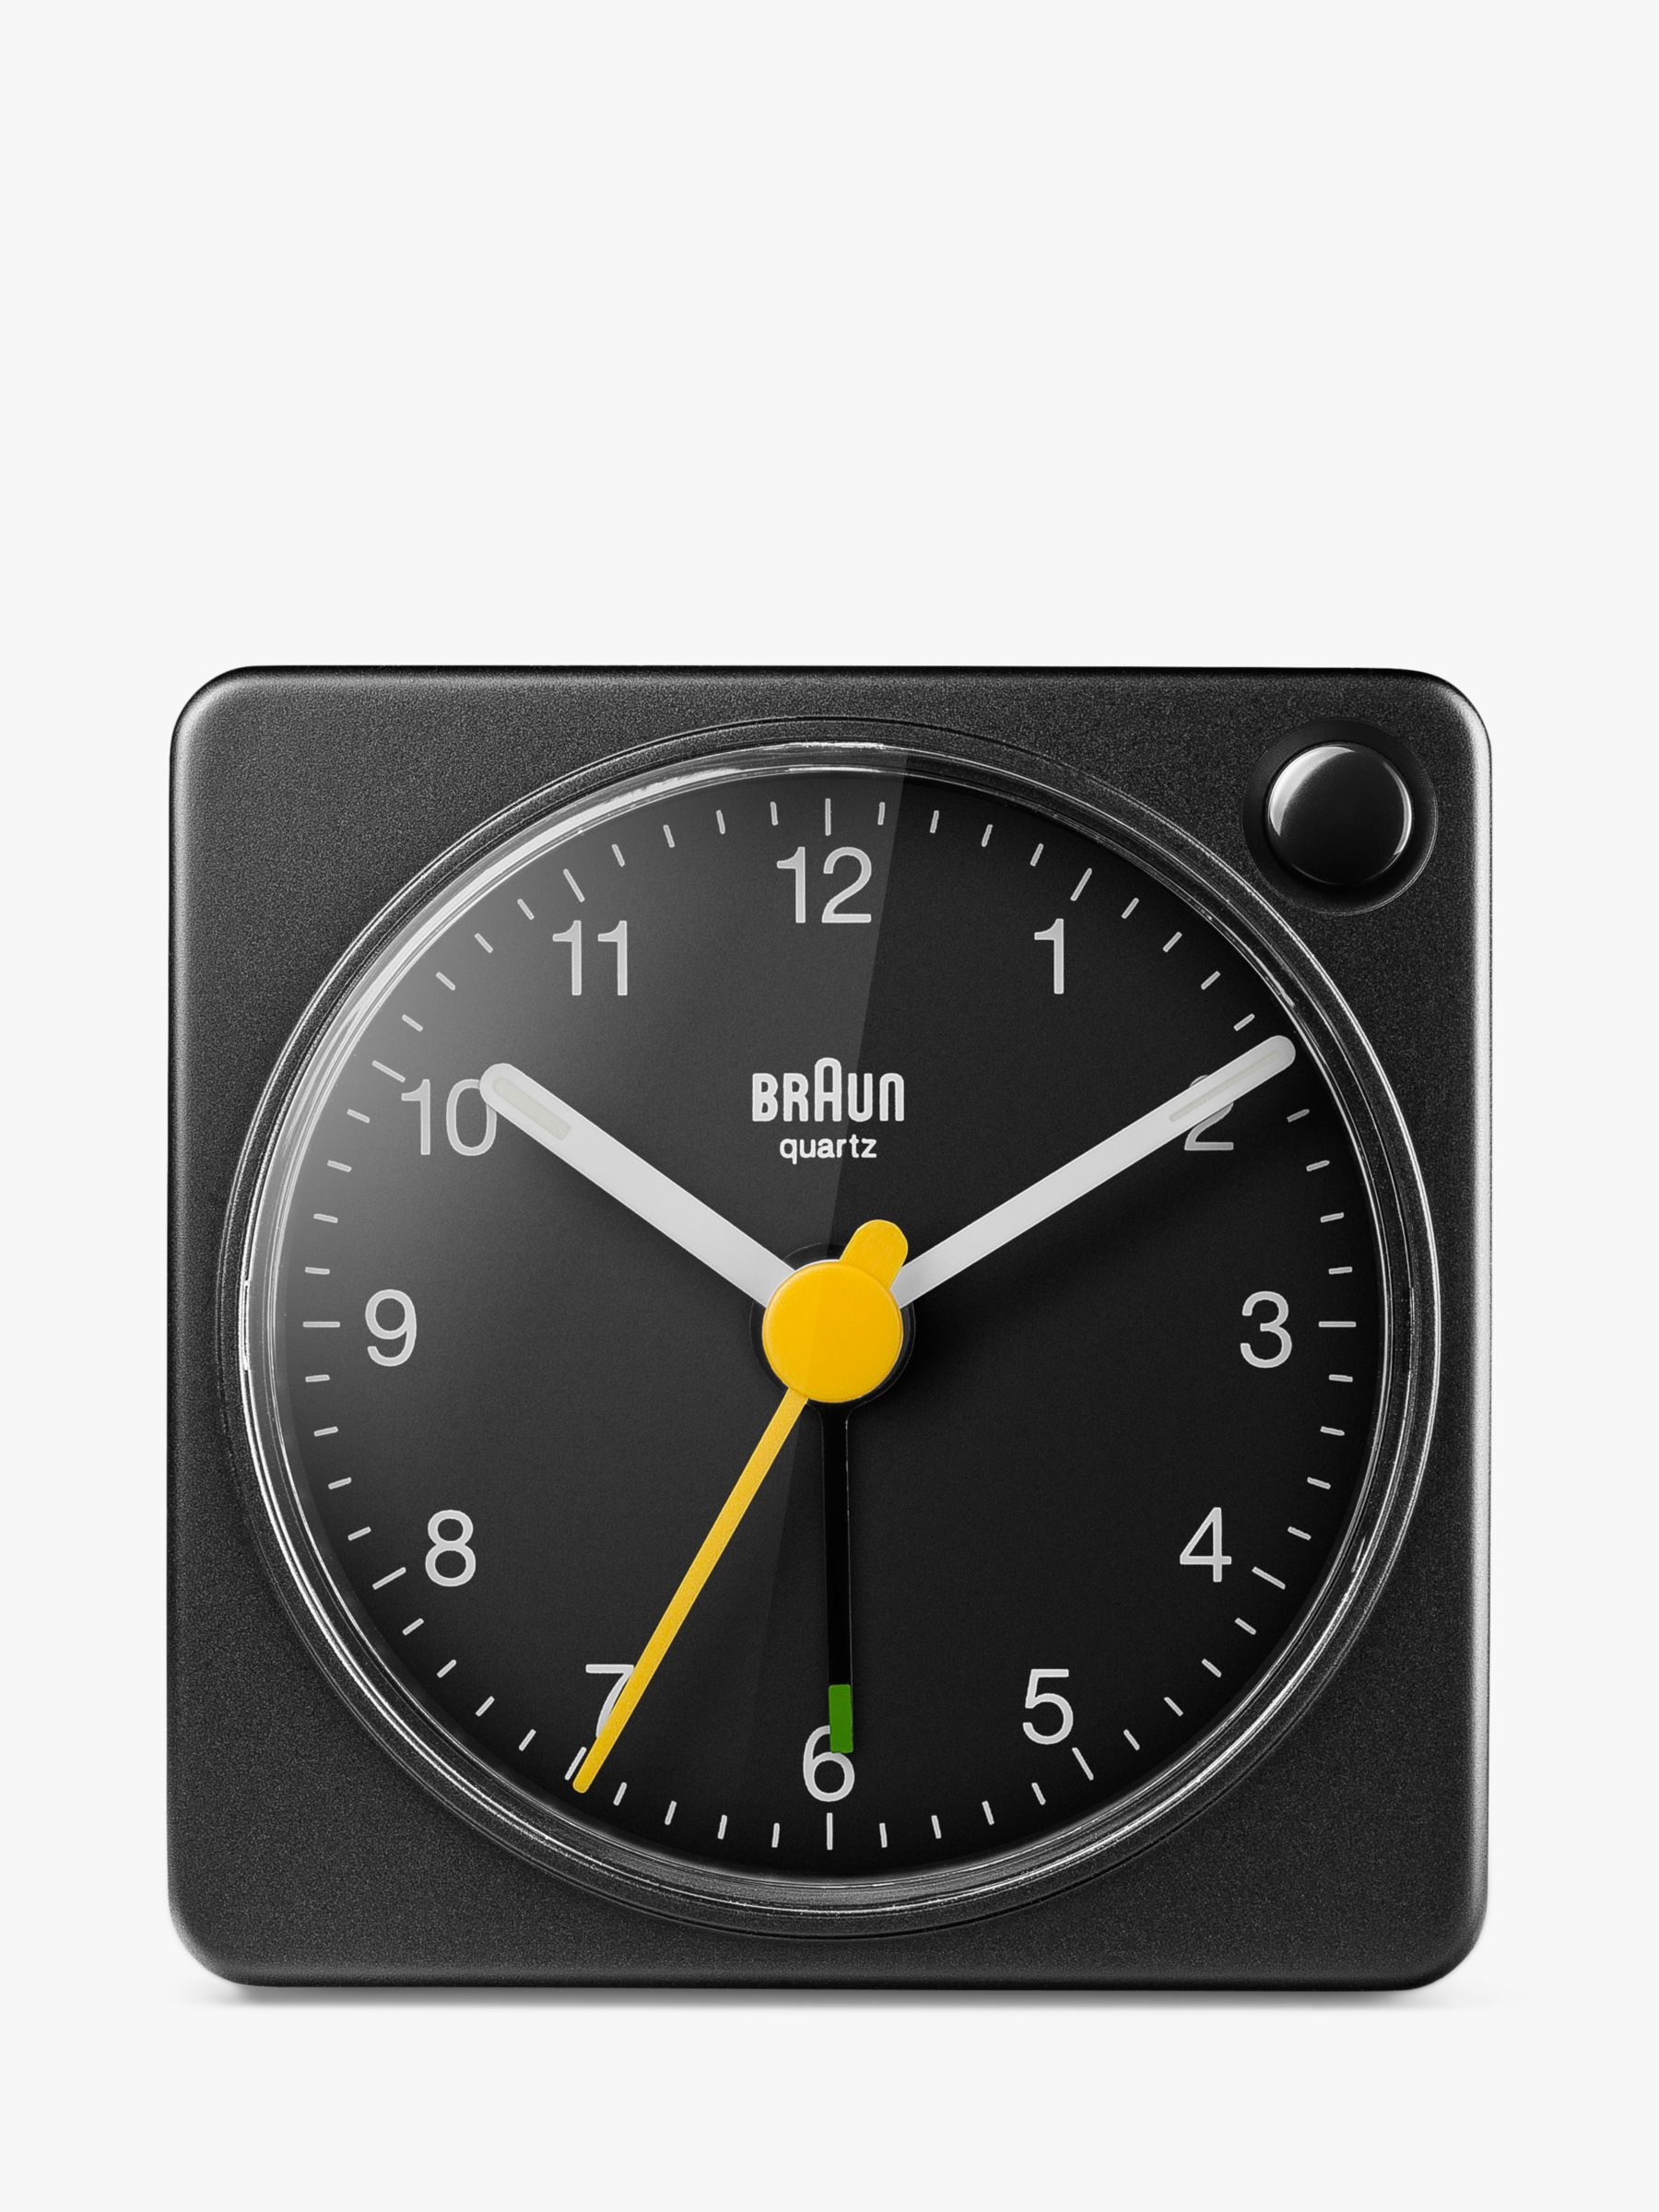 john lewis braun travel alarm clock